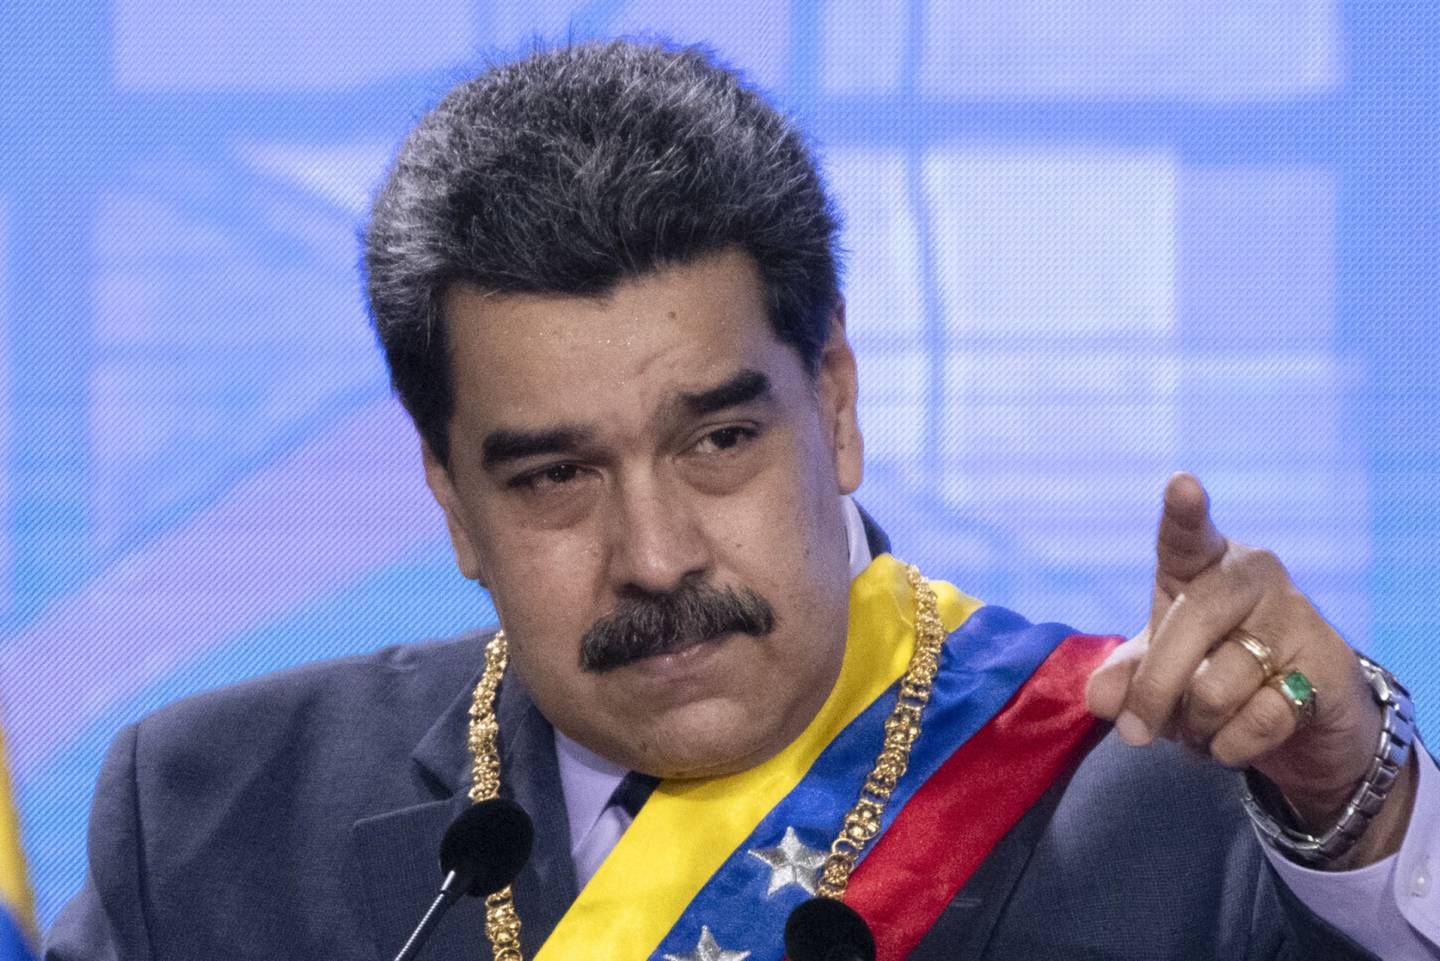 El presidente de Venezuela, Nicolás Maduro, aseguró el pasado 22 de julio que estaba listo para sentarse a negociar con la oposición en México, aunque hasta el momento, este país no ha sido confirmado como sede del diálogo.dfd